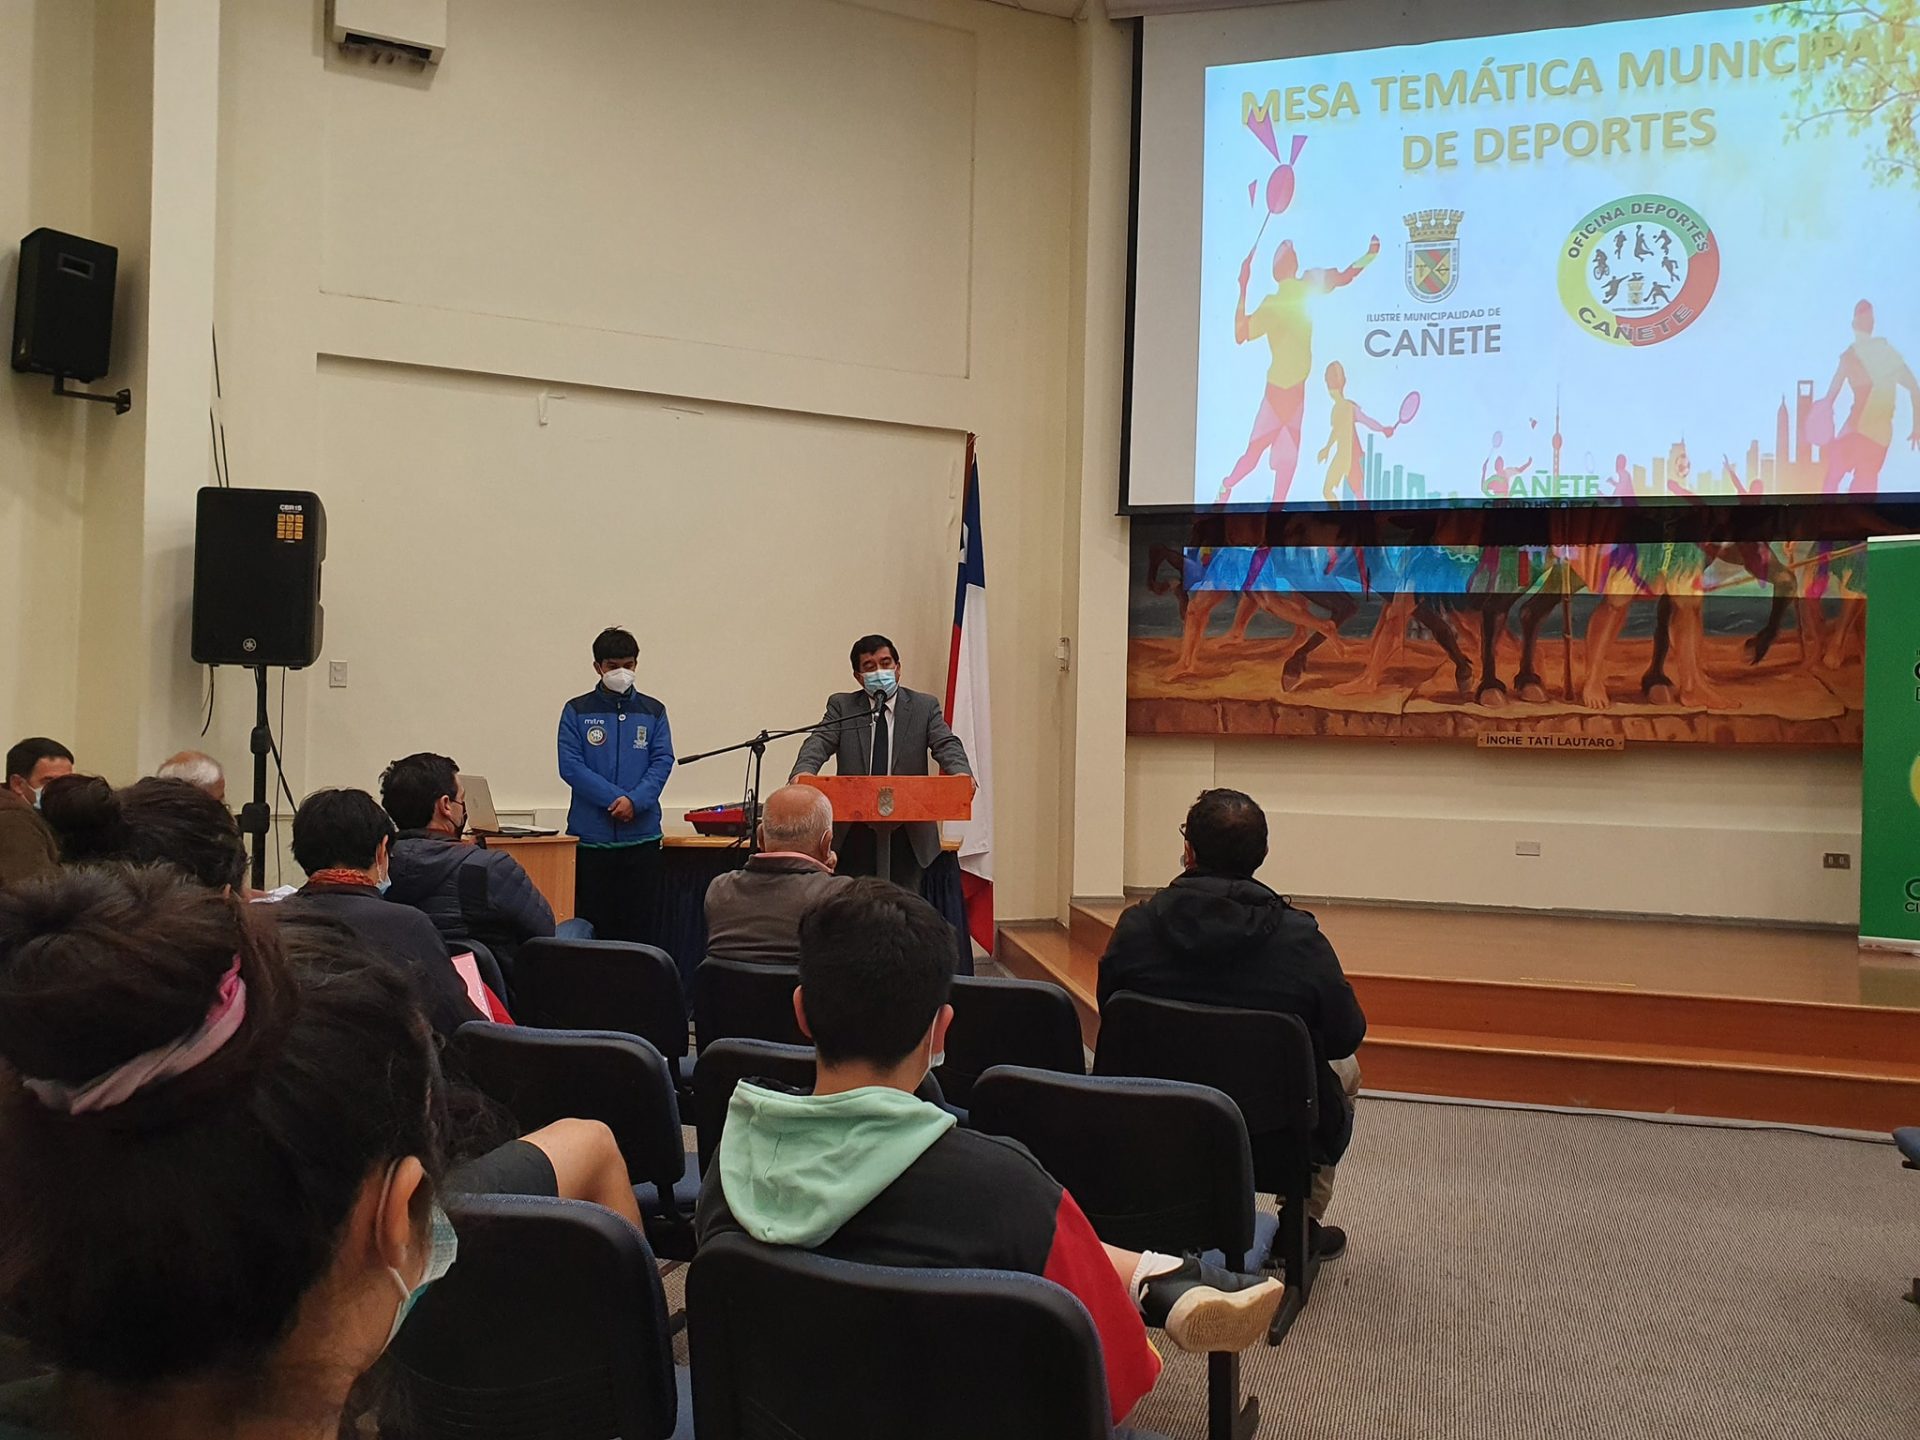 Comienza la Mesa Temática Municipal del Deporte en Cañete